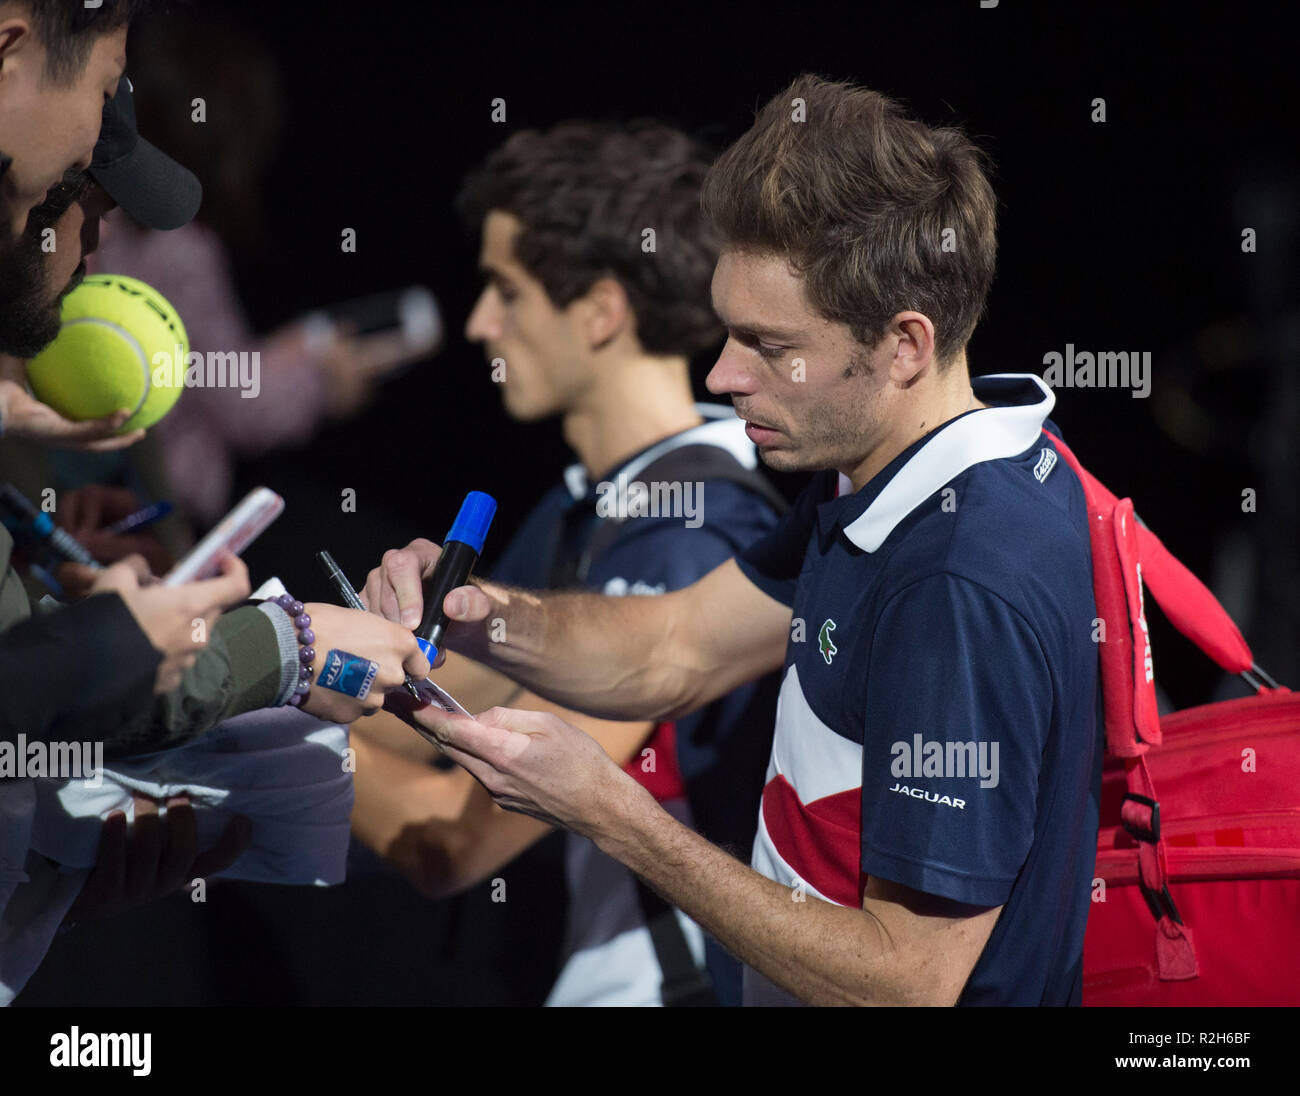 O2, Londres, Royaume-Uni. 14 novembre, 2018. Finales ATP Nitto Jour 4 soir match de double. Credit : Malcolm Park/Alamy. Banque D'Images